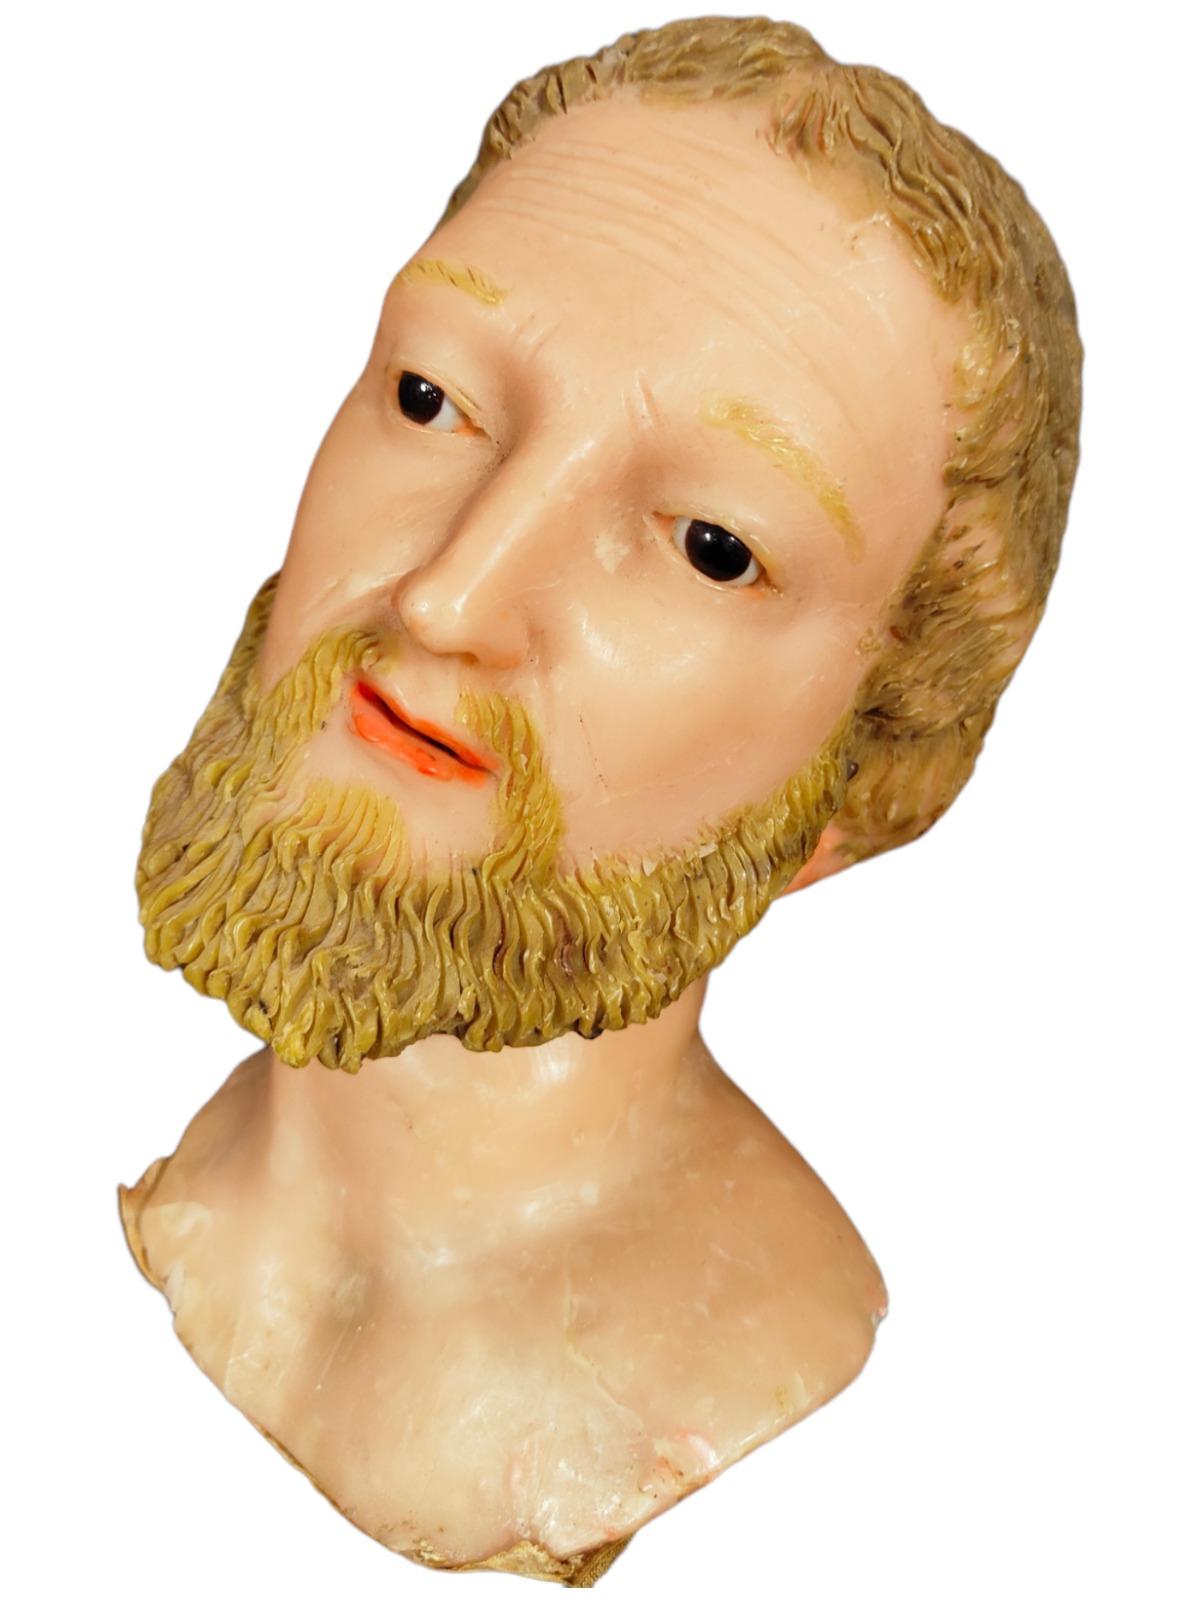 Kopf eines Heiligen aus dem 18. Jahrhundert.
Der Kopf ist in gutem Zustand, er ist aus Wachs, mit Glasaugen. Italien 18. Jahrhundert. Abmessungen: 20x22x15 cm.